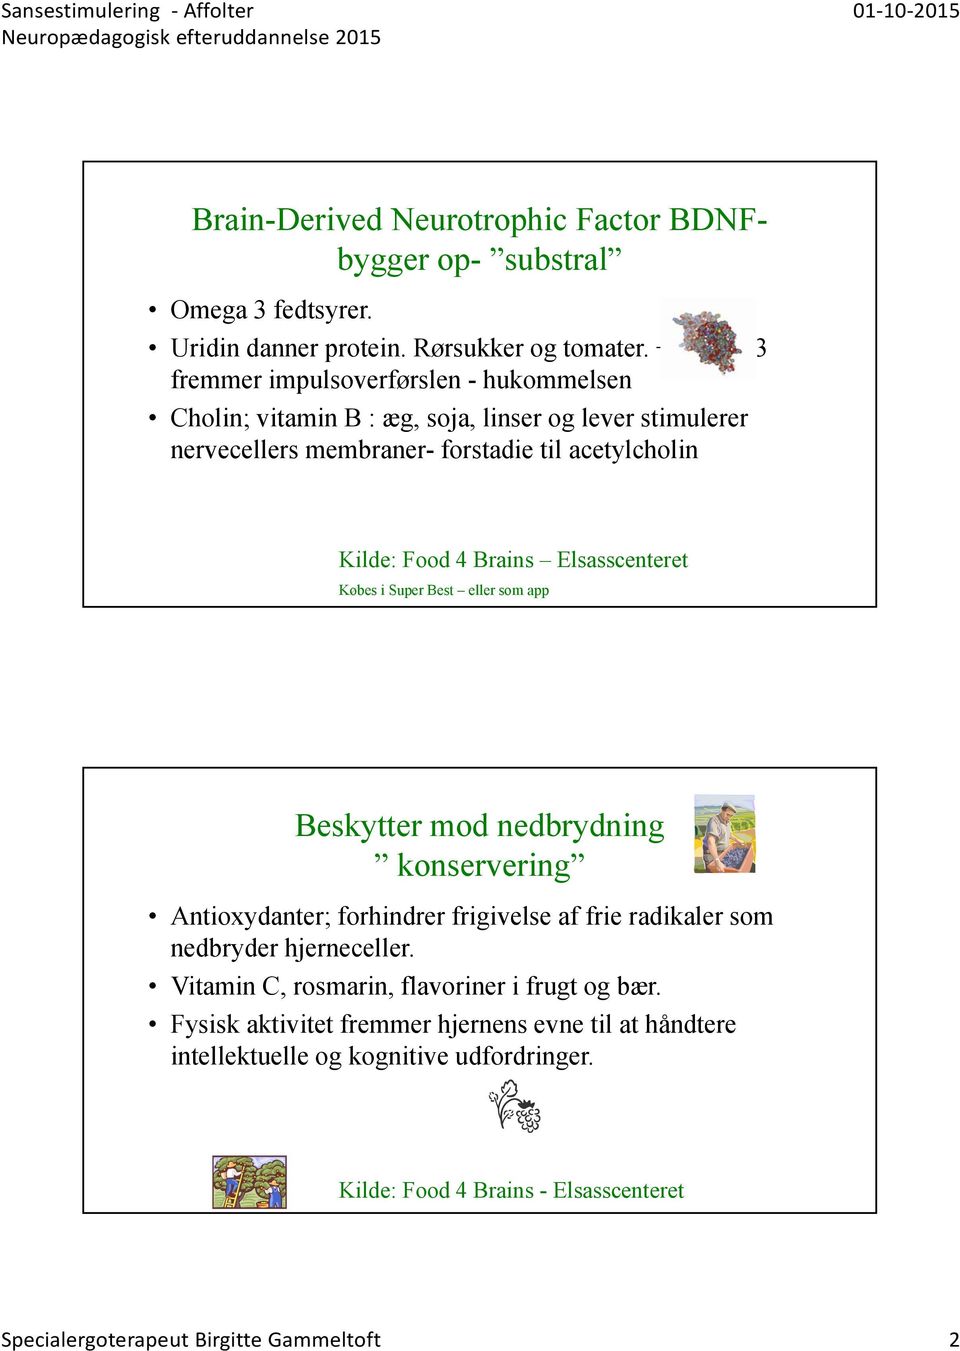 Noter til Neuropædagogisk efteruddannelse. Introduction. Birgitte ...